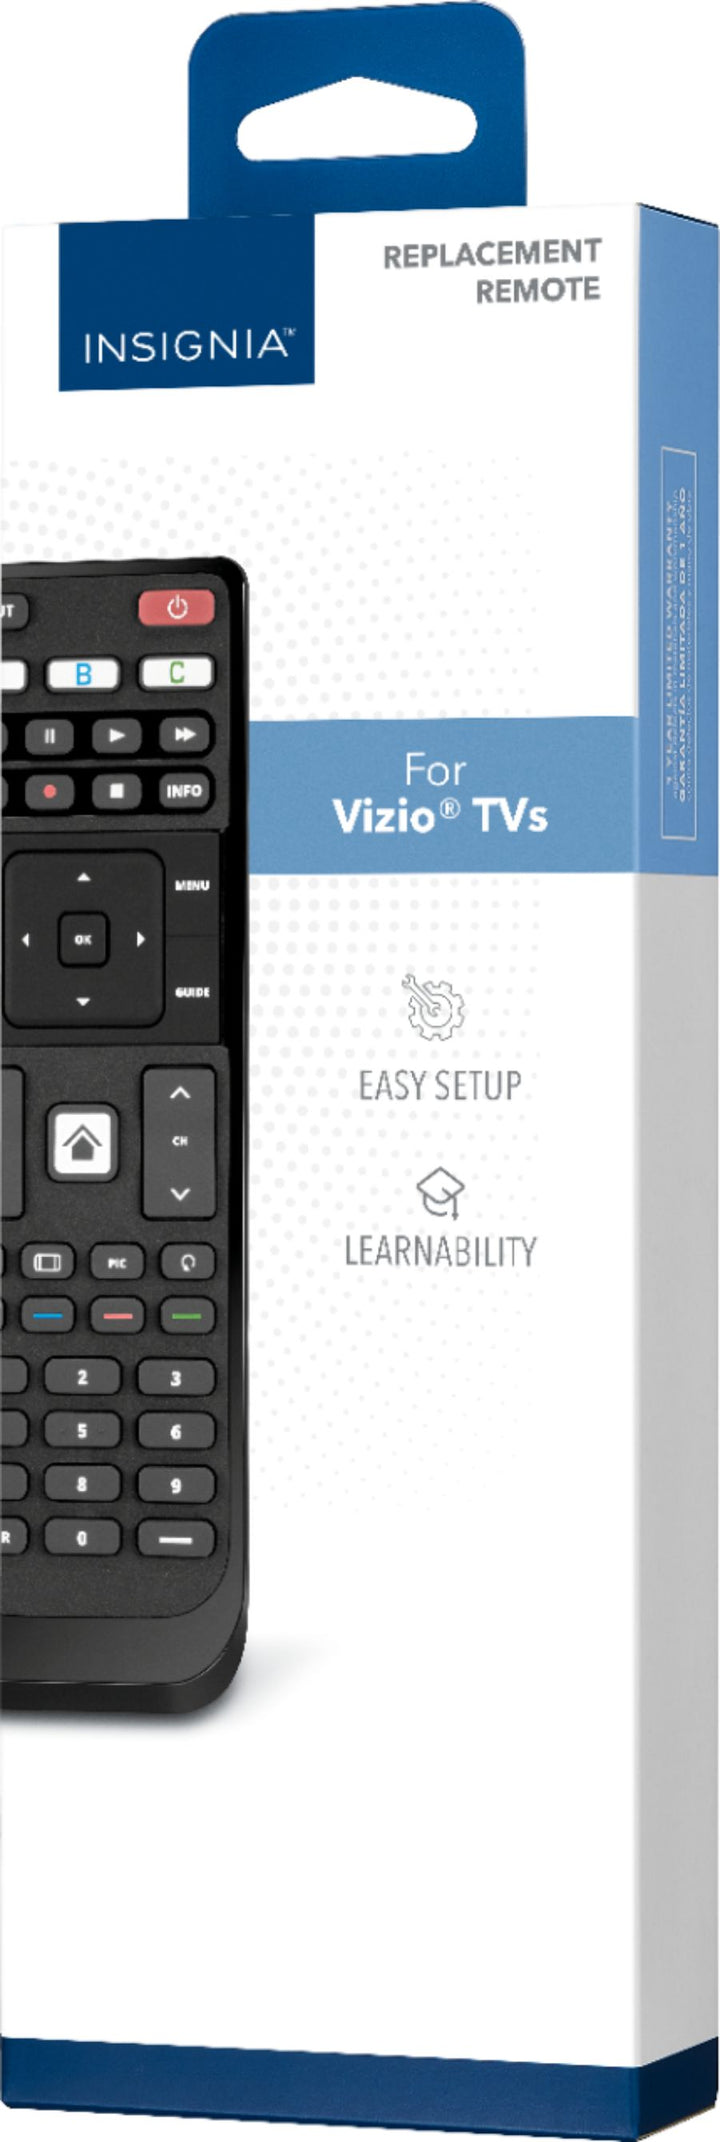 Insignia™ - Replacement Remote for Vizio TVs - Black_1